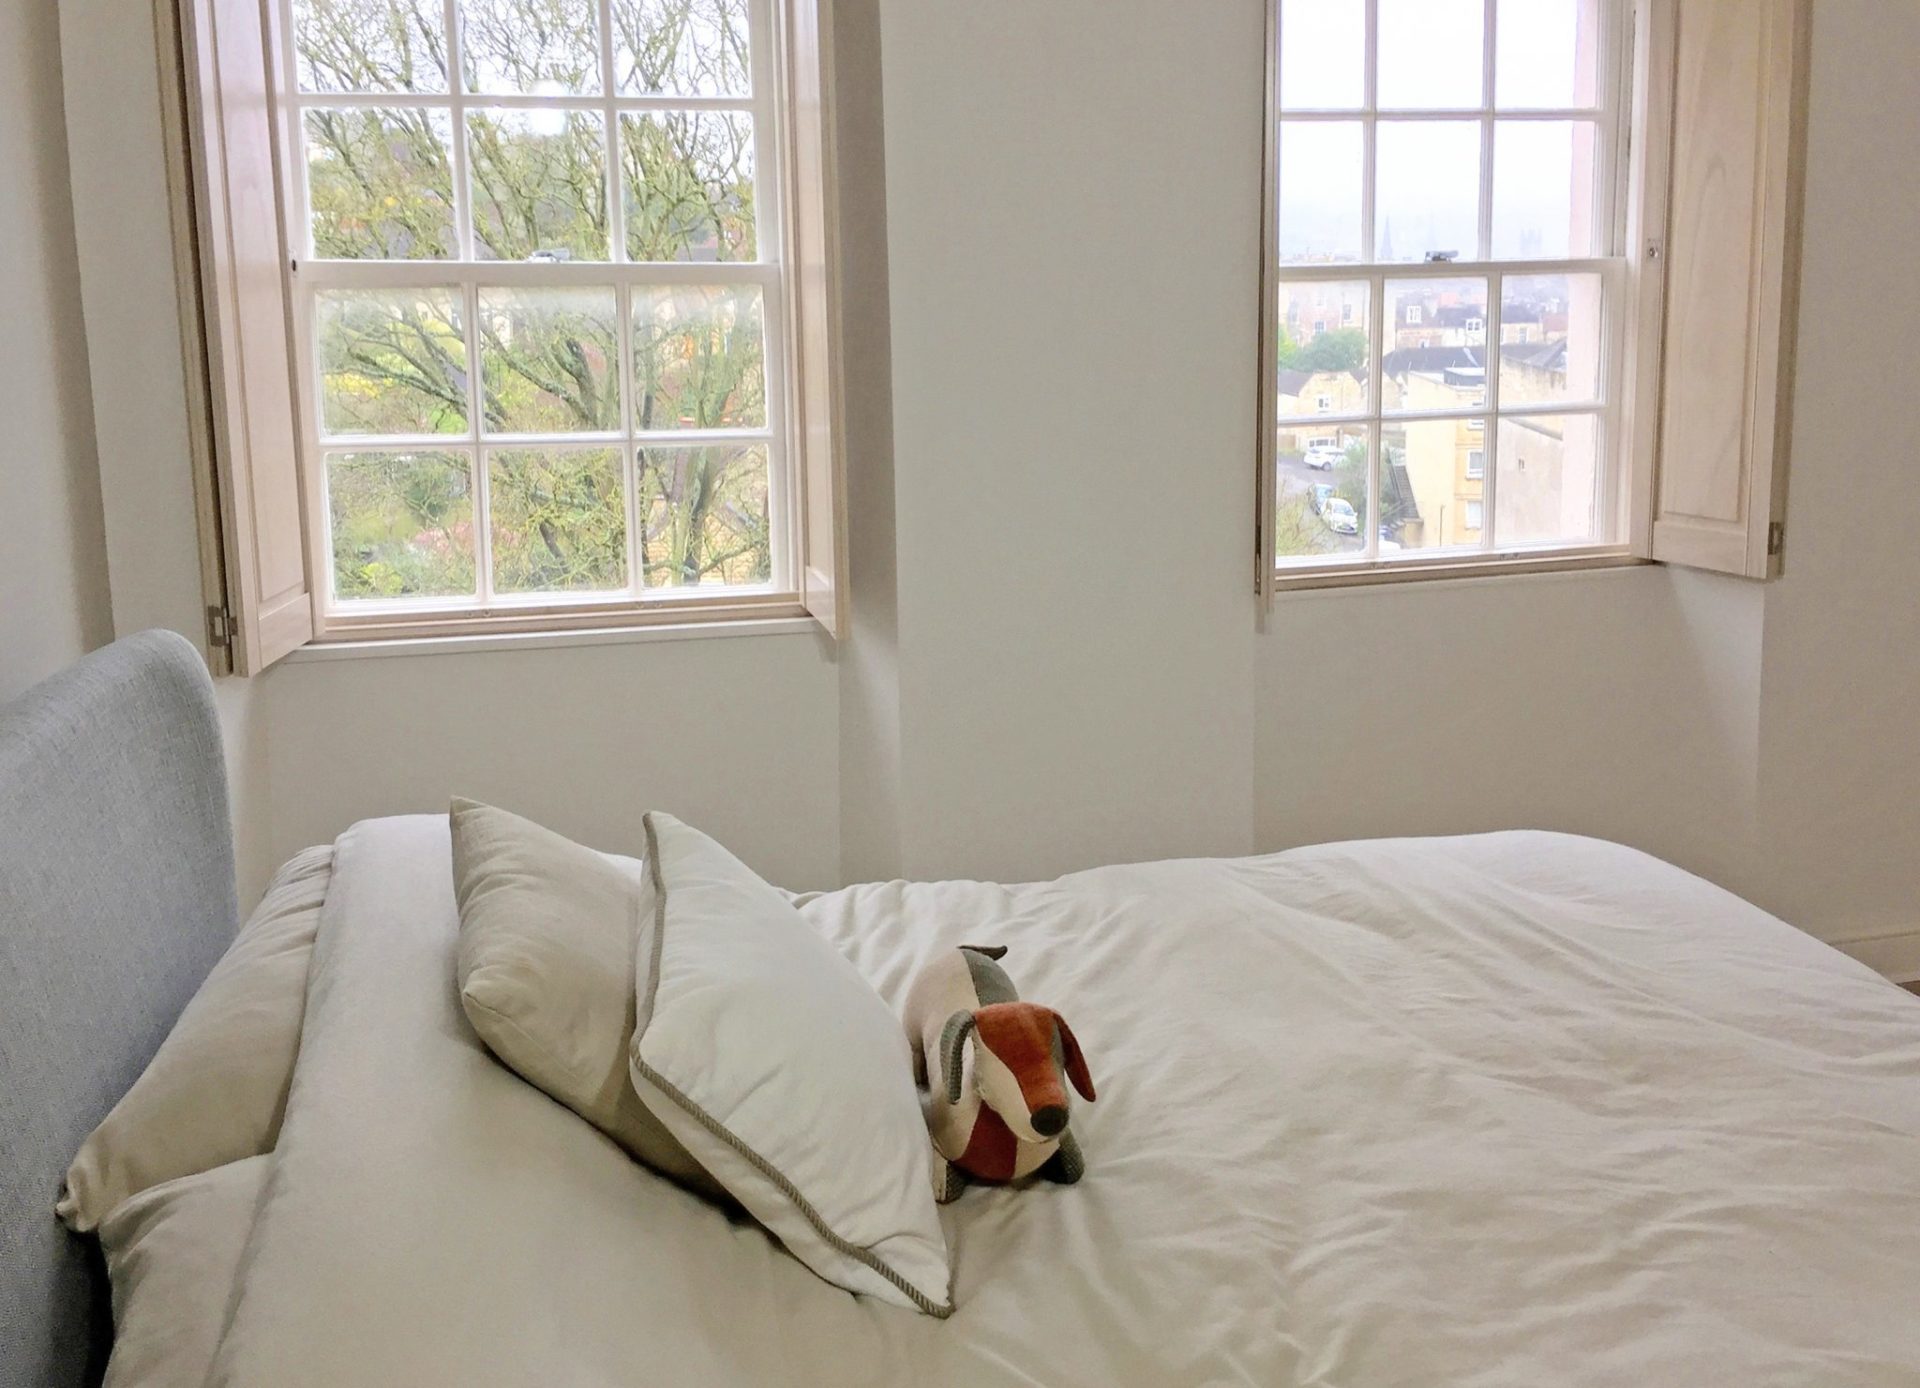 Bedroom Shutters Made To Measure Window Shutters – Shuttercraft